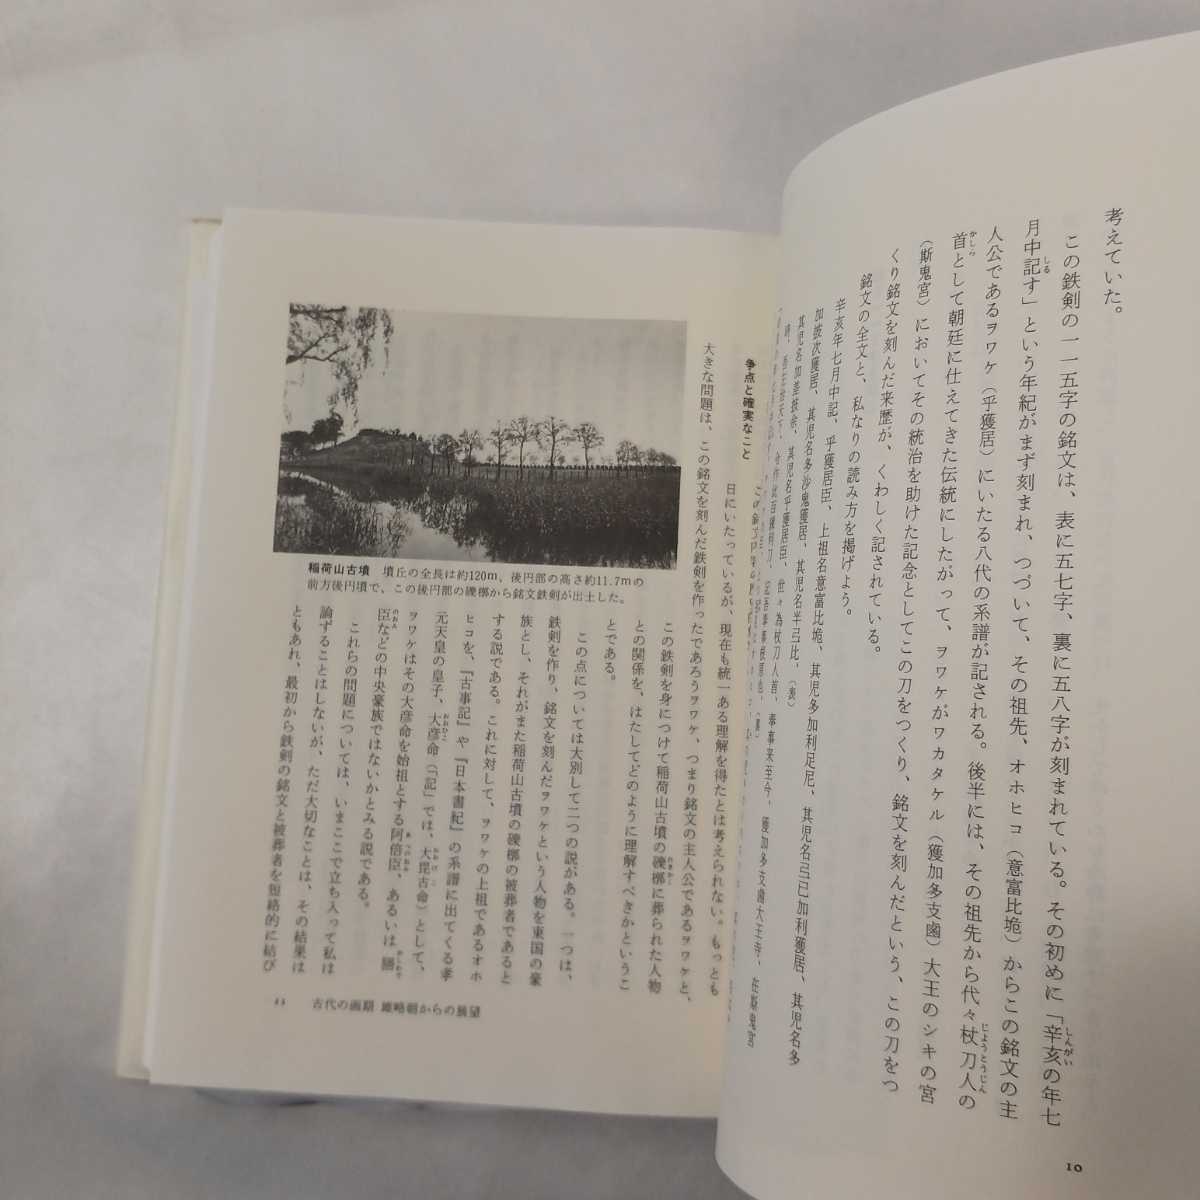 zaa-426♪王権をめぐる戦い (日本の古代6) 岸俊男(編集) (1986/11/01)